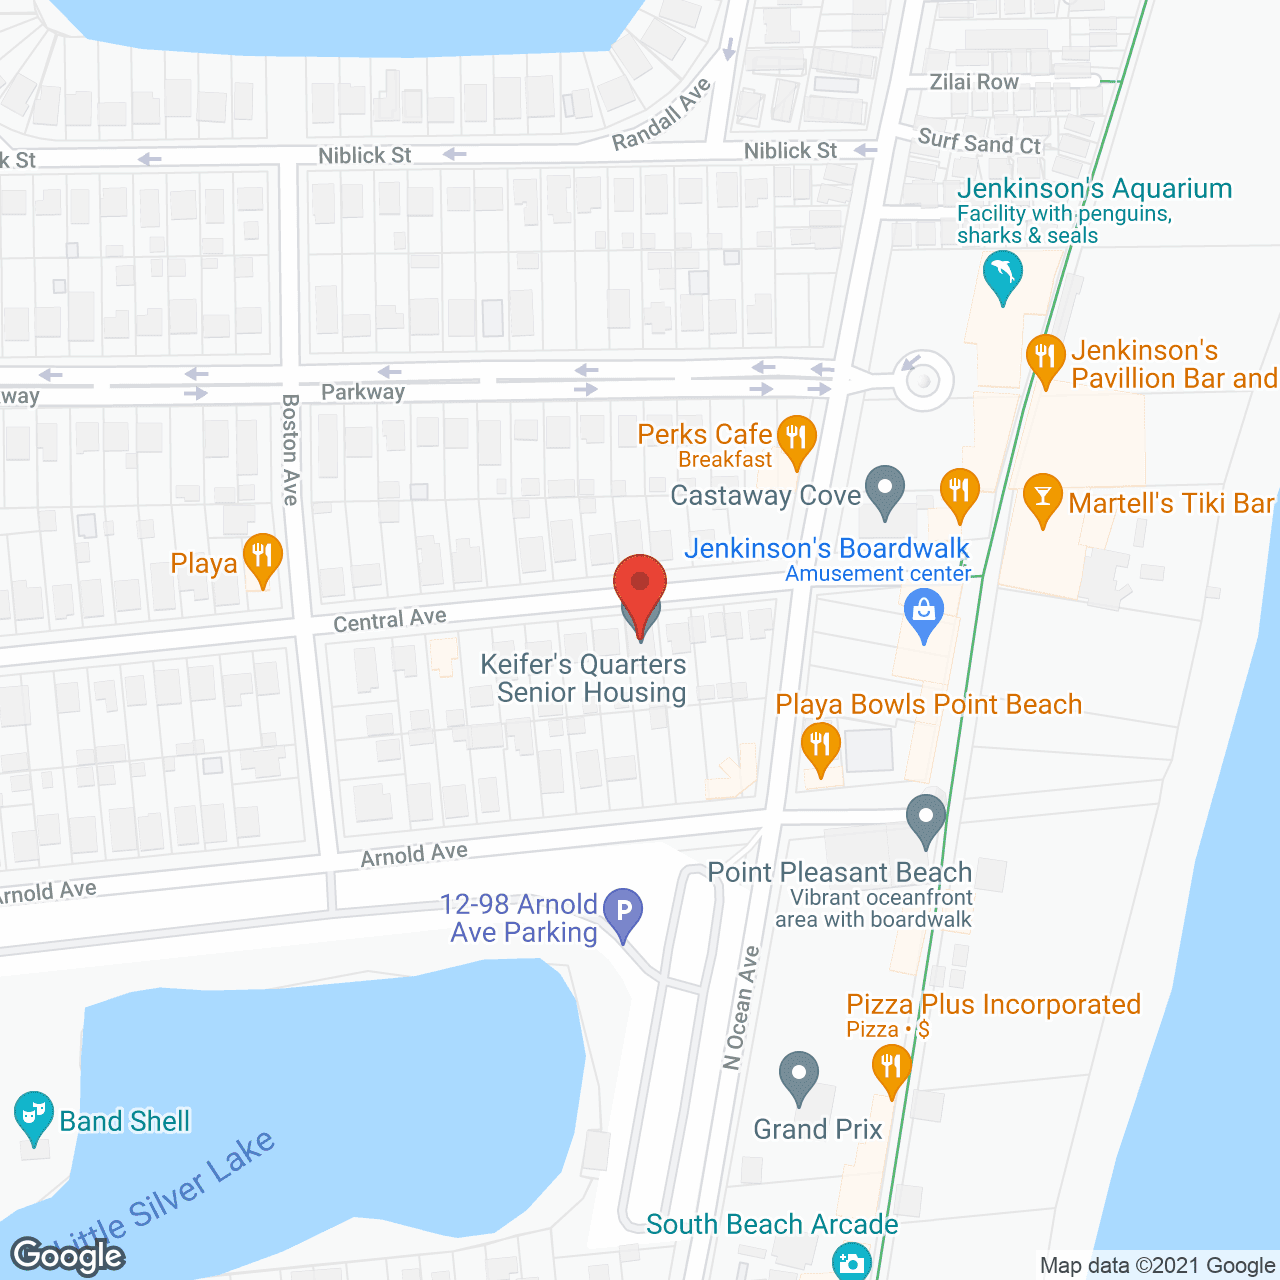 Keifers Quarters in google map